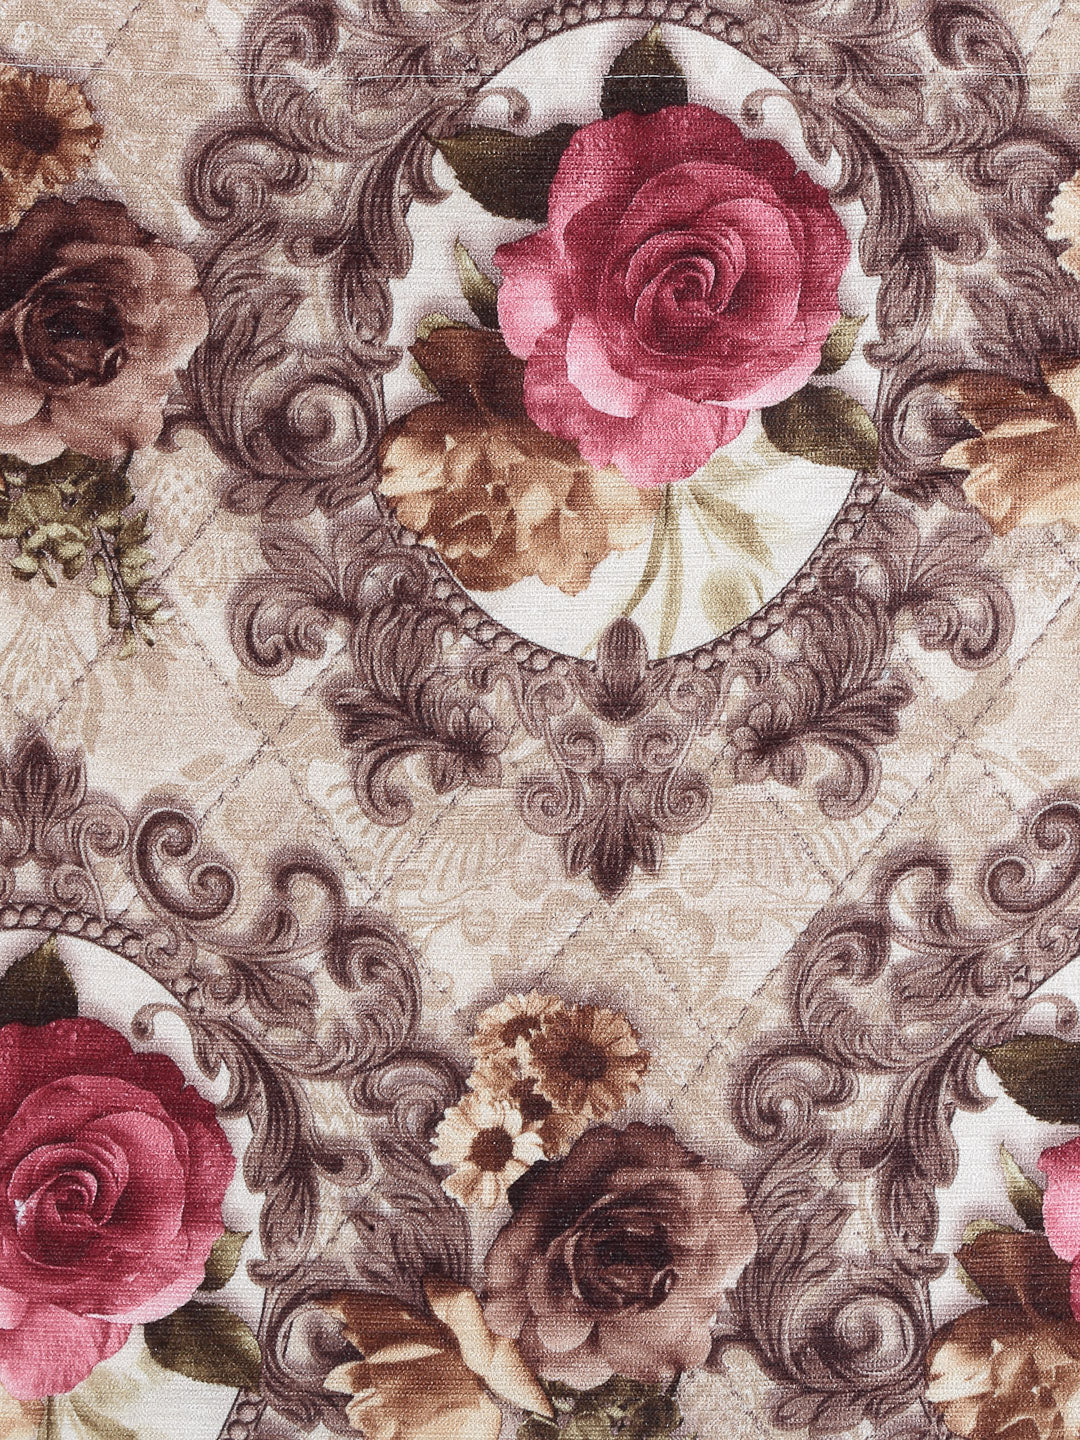 Arrabi Beige Floral TC Cotton Blend Cushion Covers (Pack of 5) (40 x 40 cm)